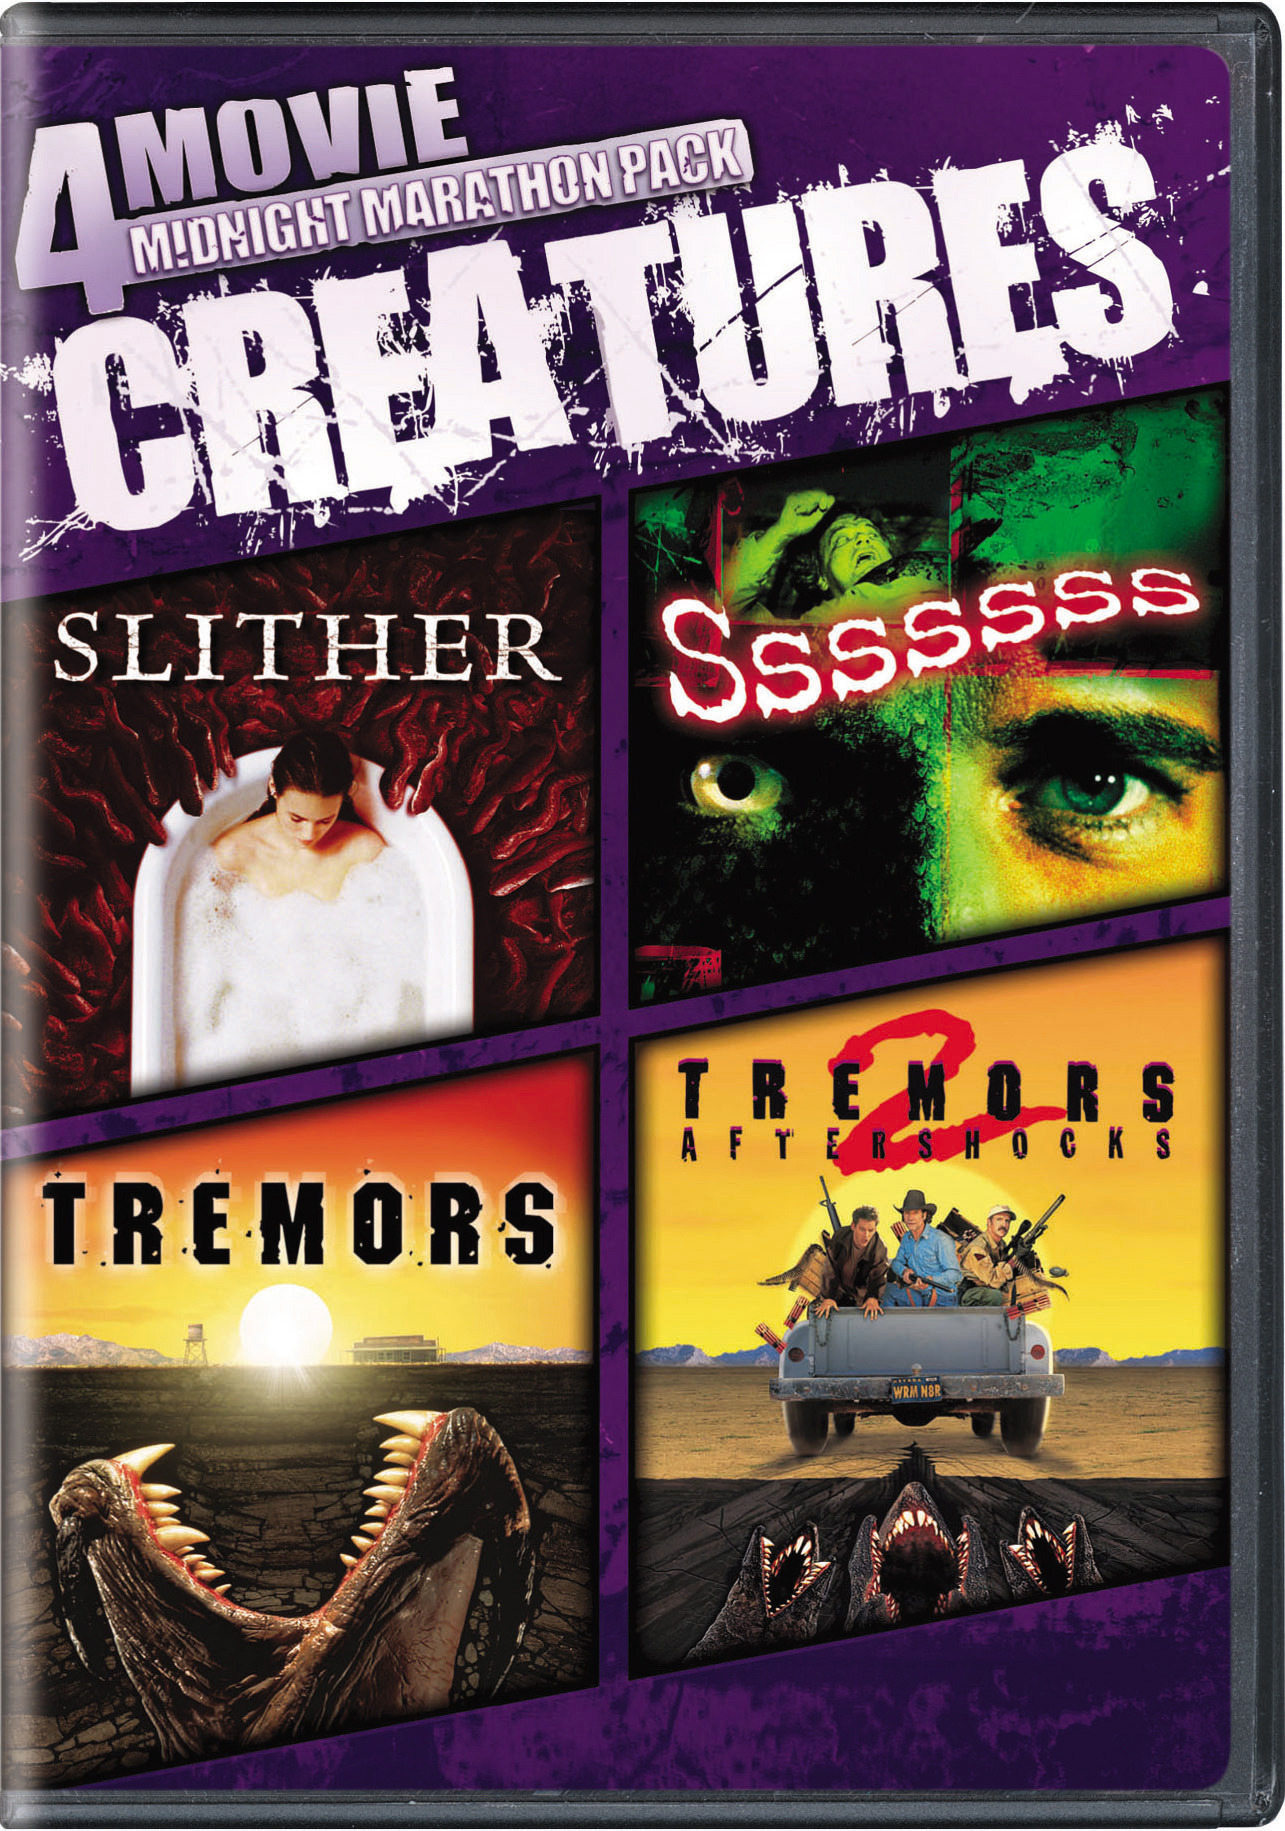 4-Movie Midnight Marathon: Creatures (DVD + Movie Cash) - DVD   - Thriller Movies On DVD - Movies On GRUV